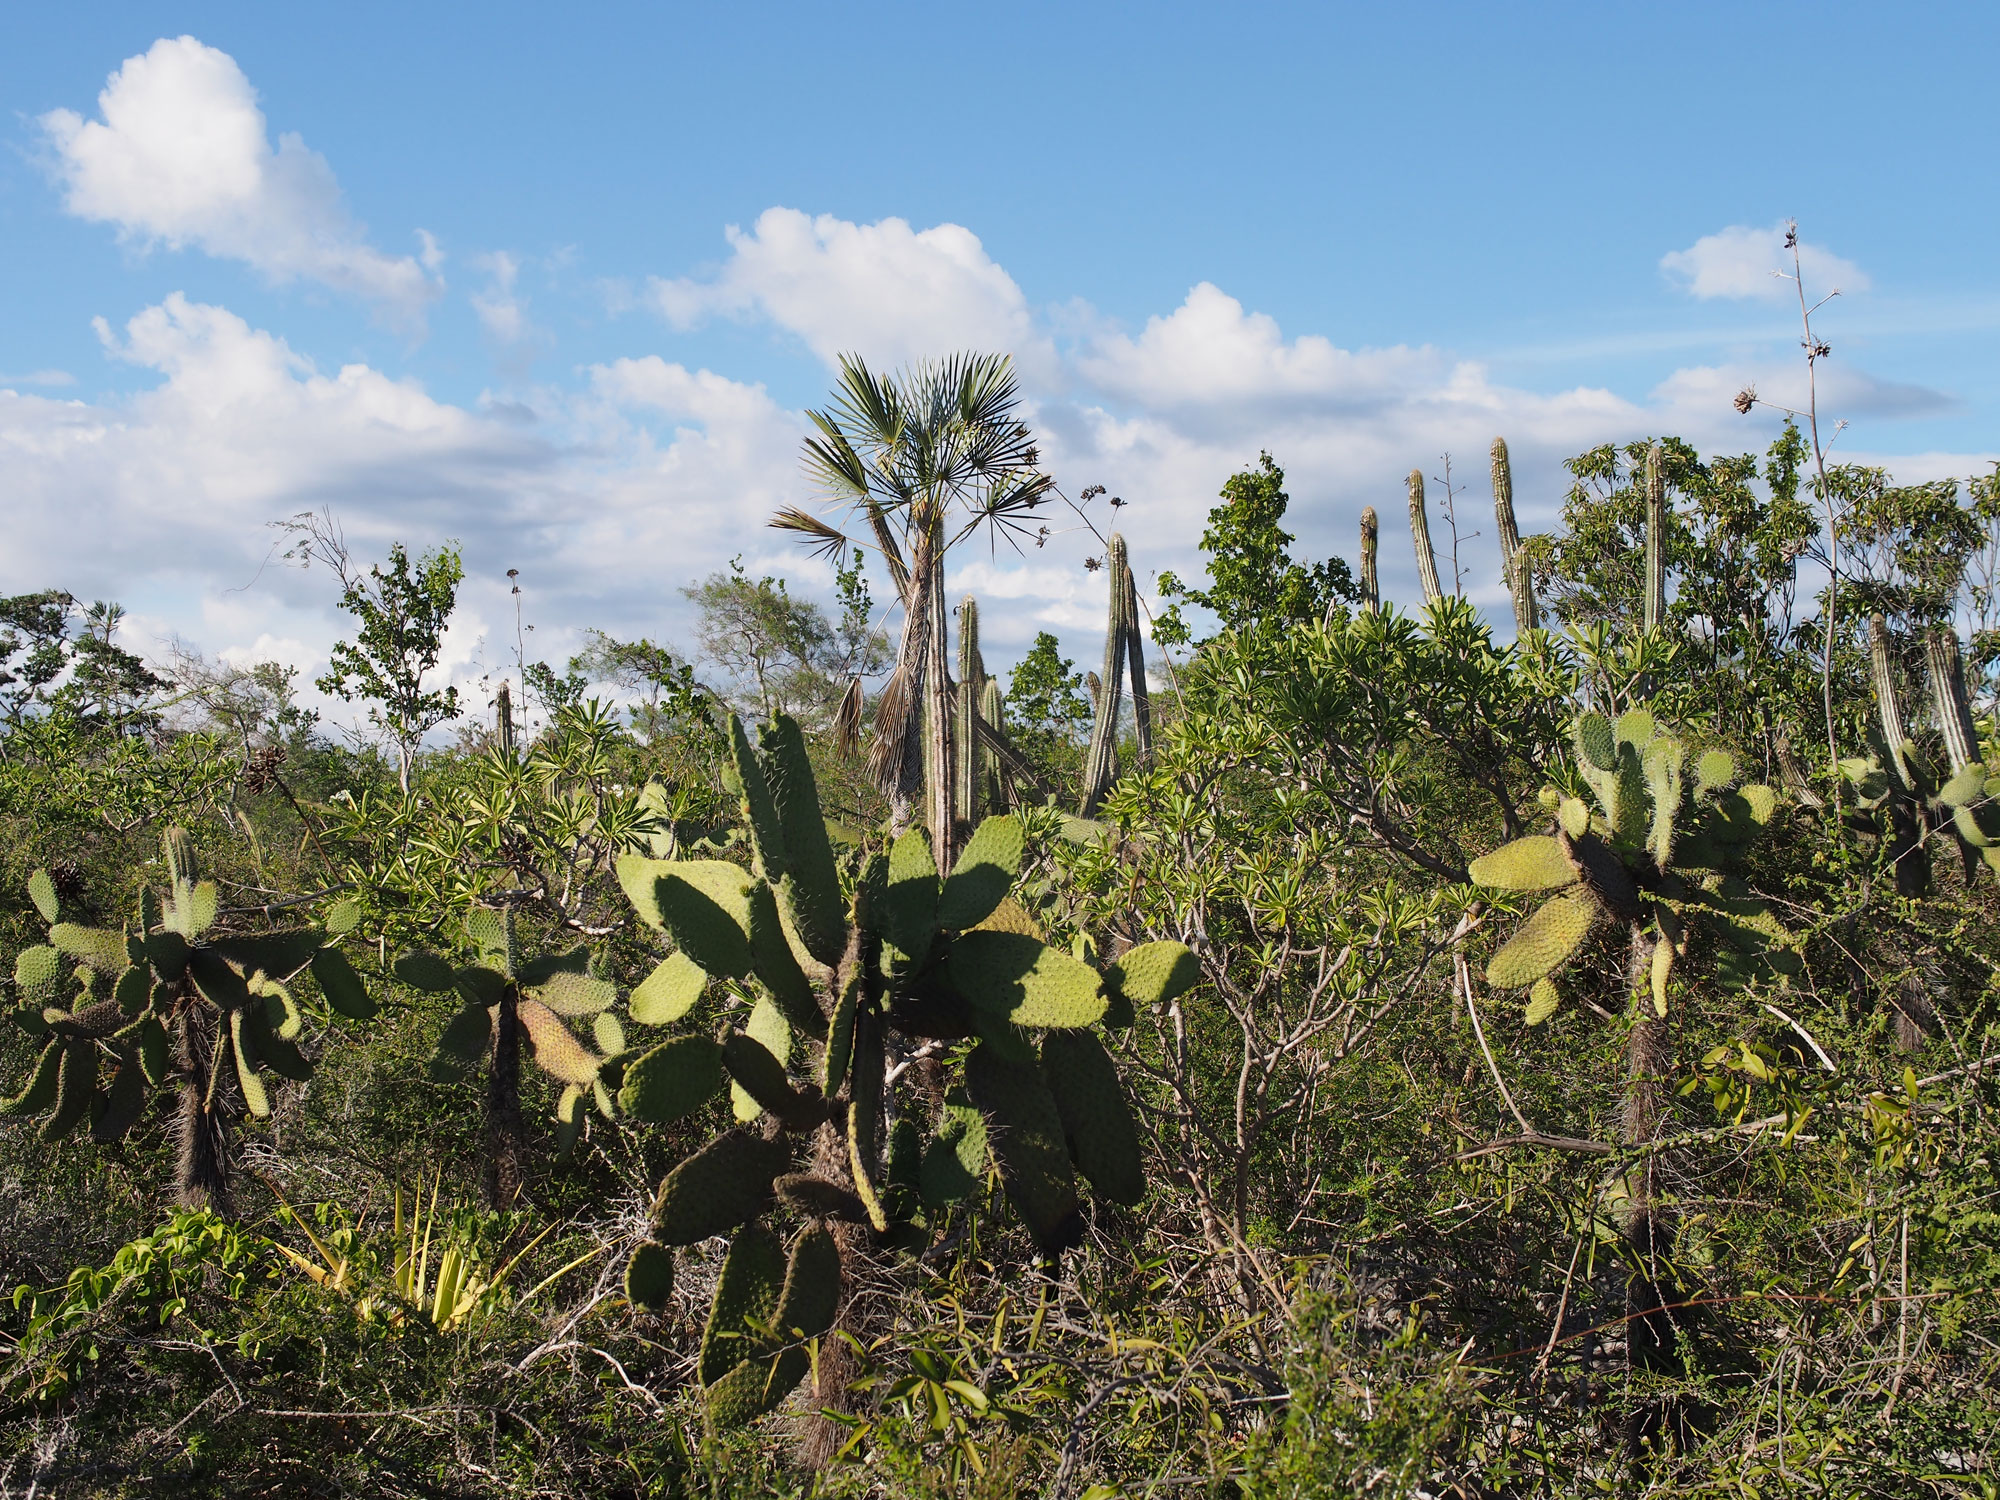 Forêt de cactus - A perte de vue, des cactus, en coussins, buissonnant, arborescents... - JPEG - 1 Mo - 2000×1500 px